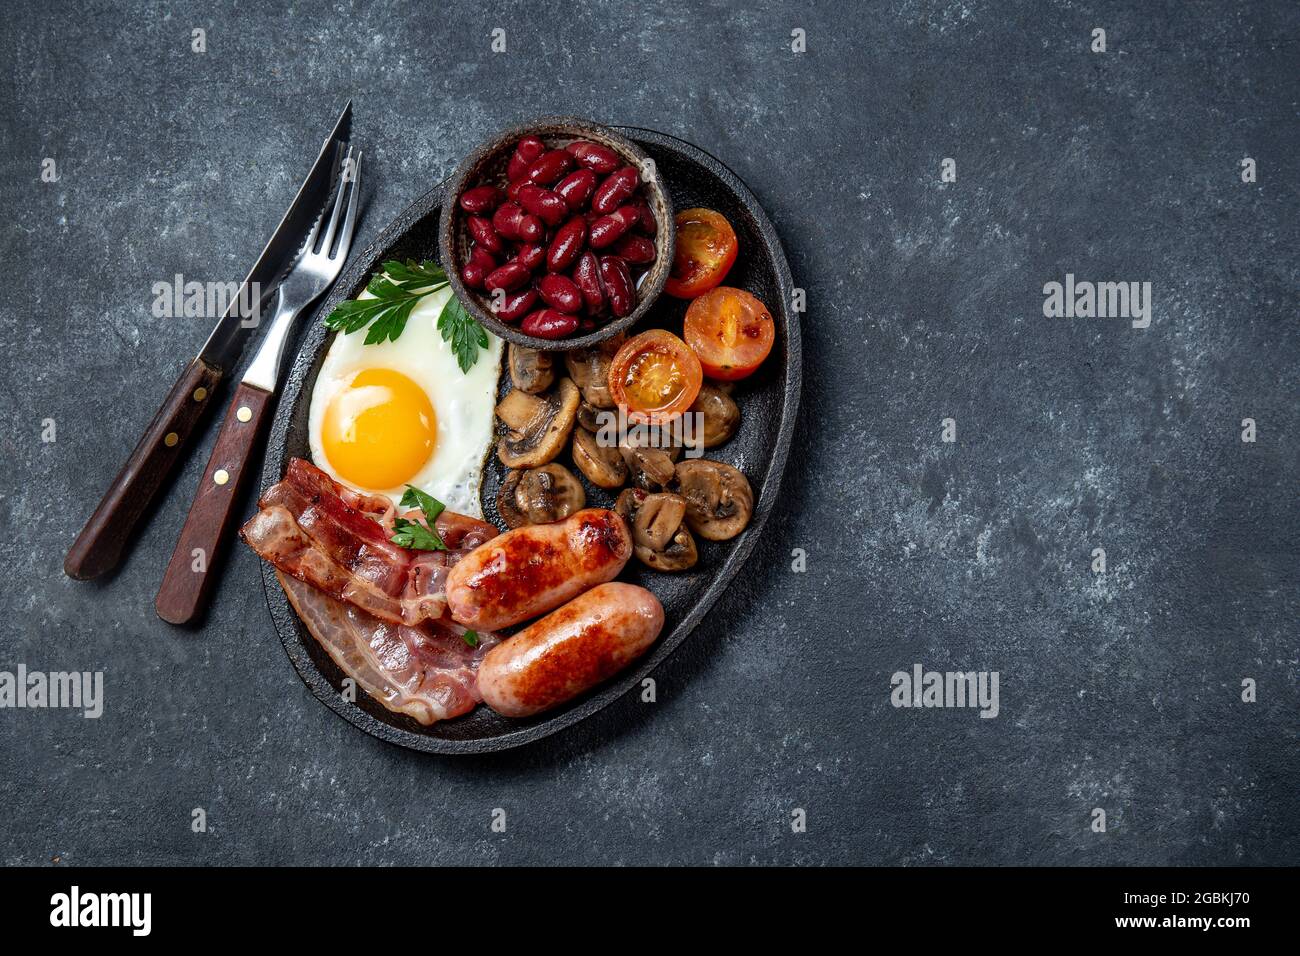 Petit-déjeuner anglais avec œufs frits, bacon, saucisses, haricots, toasts sur fond noir Banque D'Images